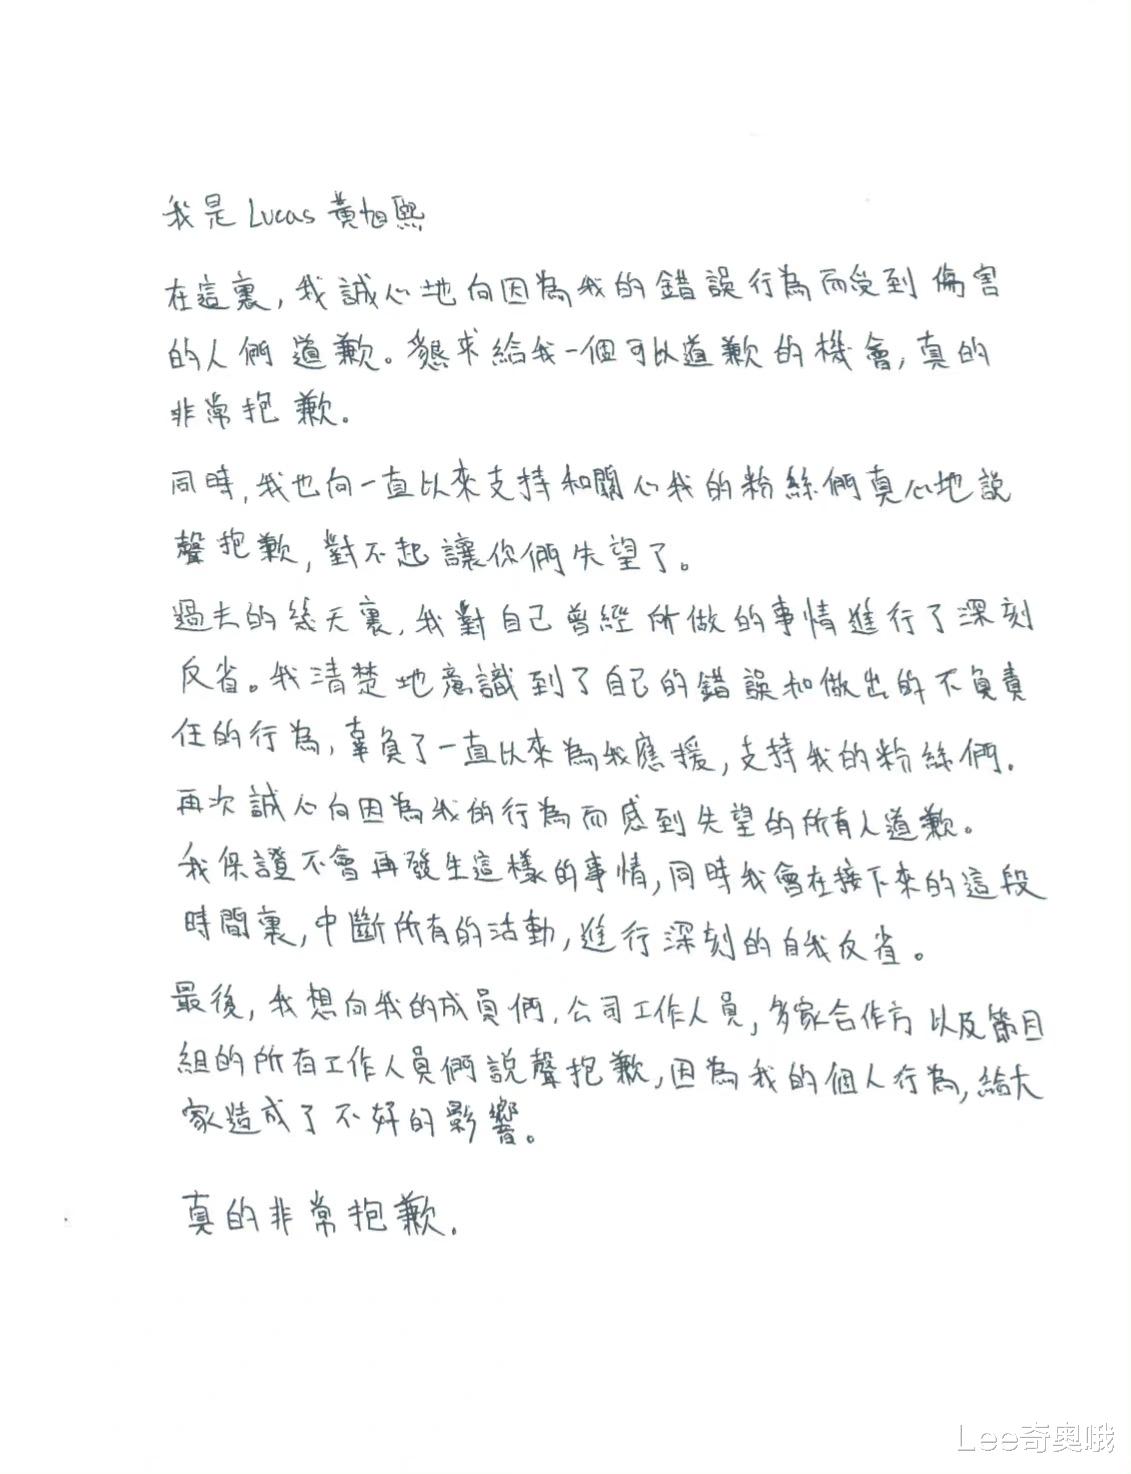 威神V成員黃旭熙就近日的醜聞事件發佈道歉聲明 暫停一切活動-圖2